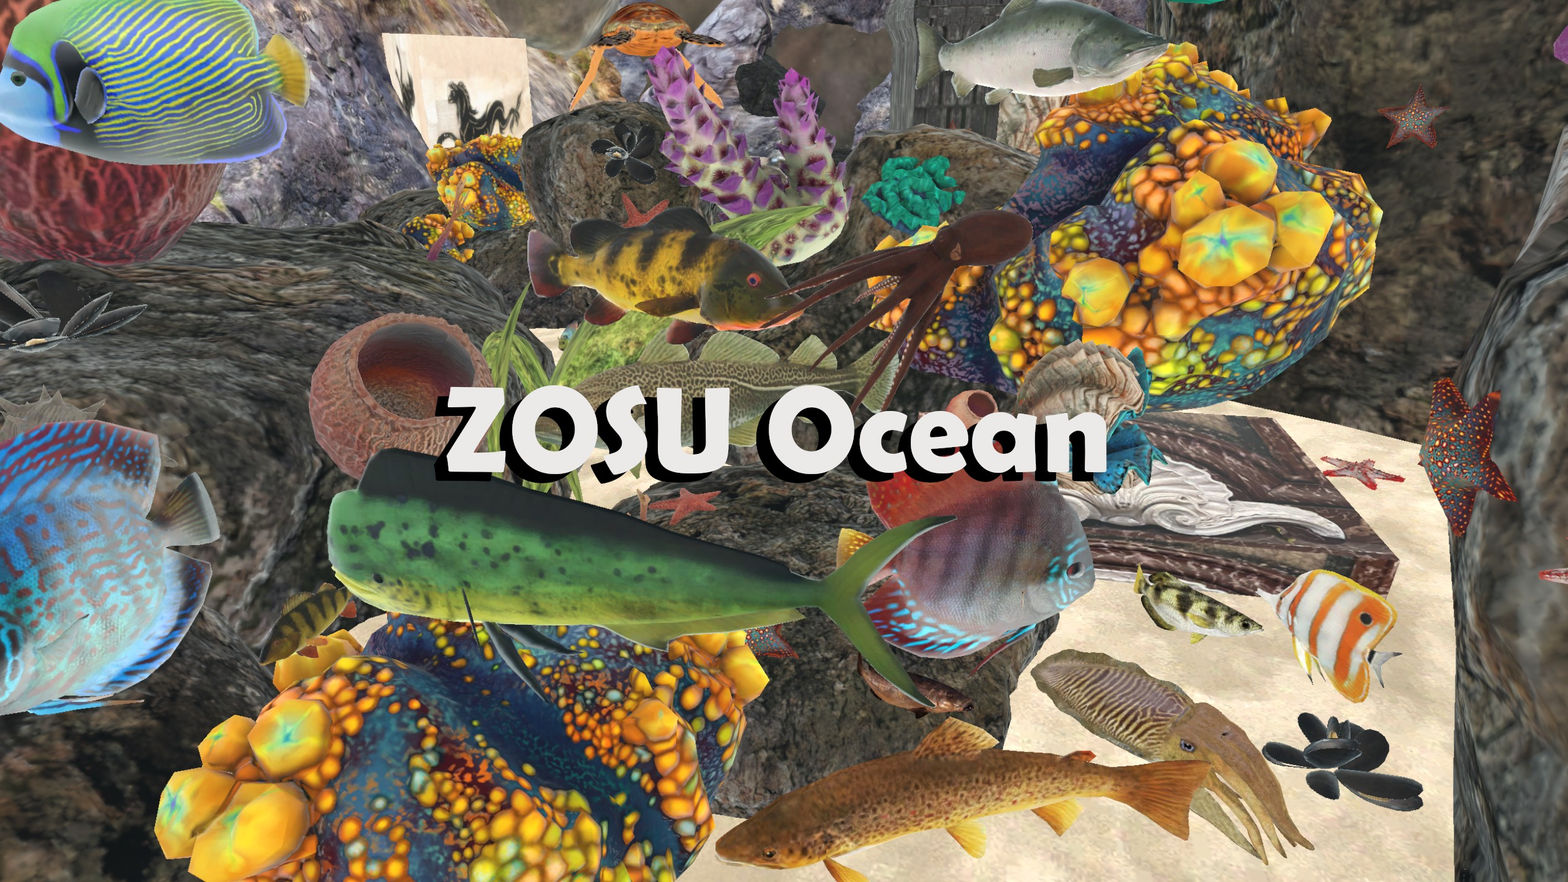 ZOSU Ocean